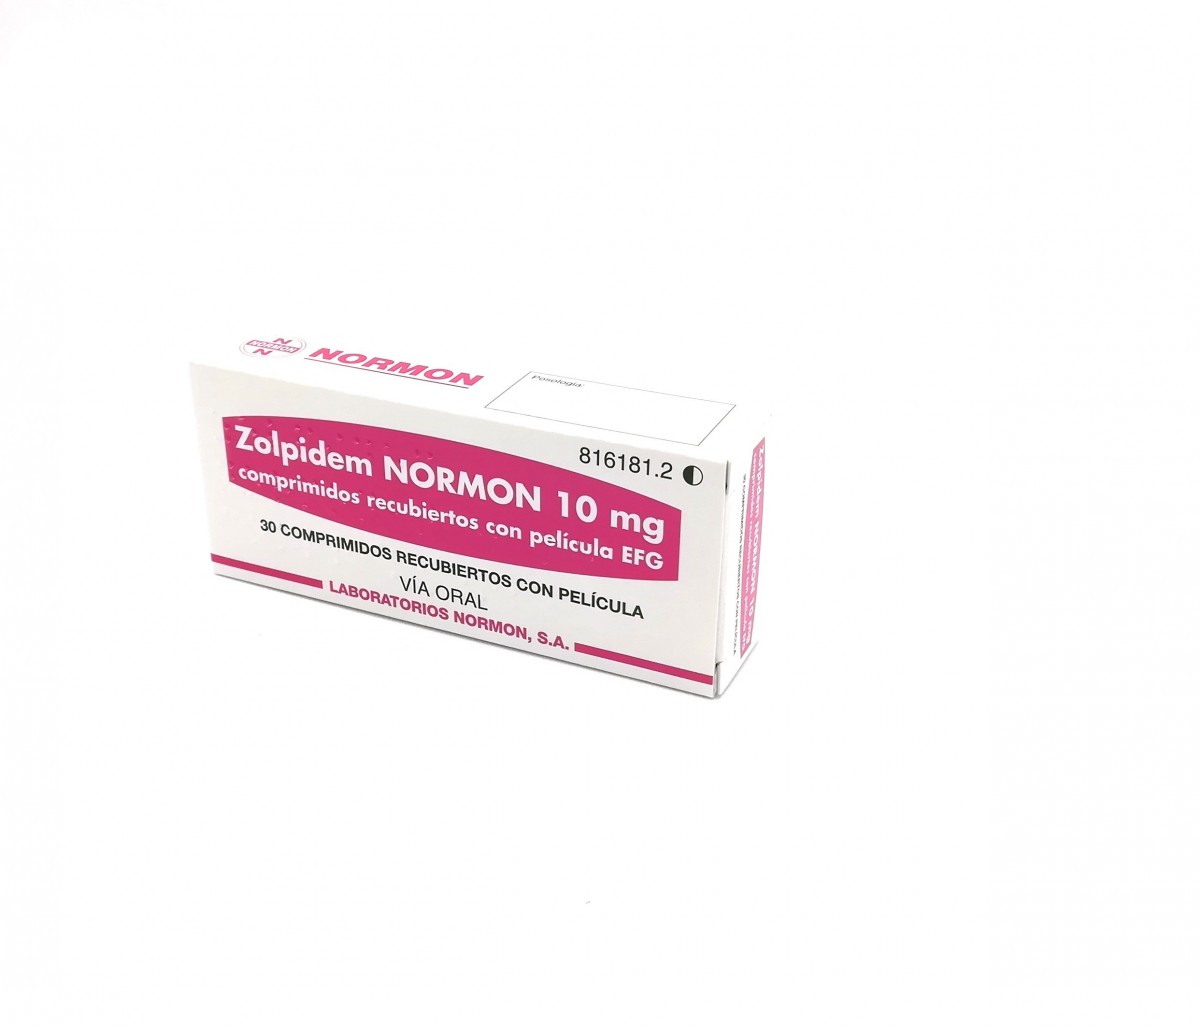 ZOLPIDEM NORMON 10 mg COMPRIMIDOS RECUBIERTOS CON PELICULA EFG , 30 comprimidos fotografía del envase.